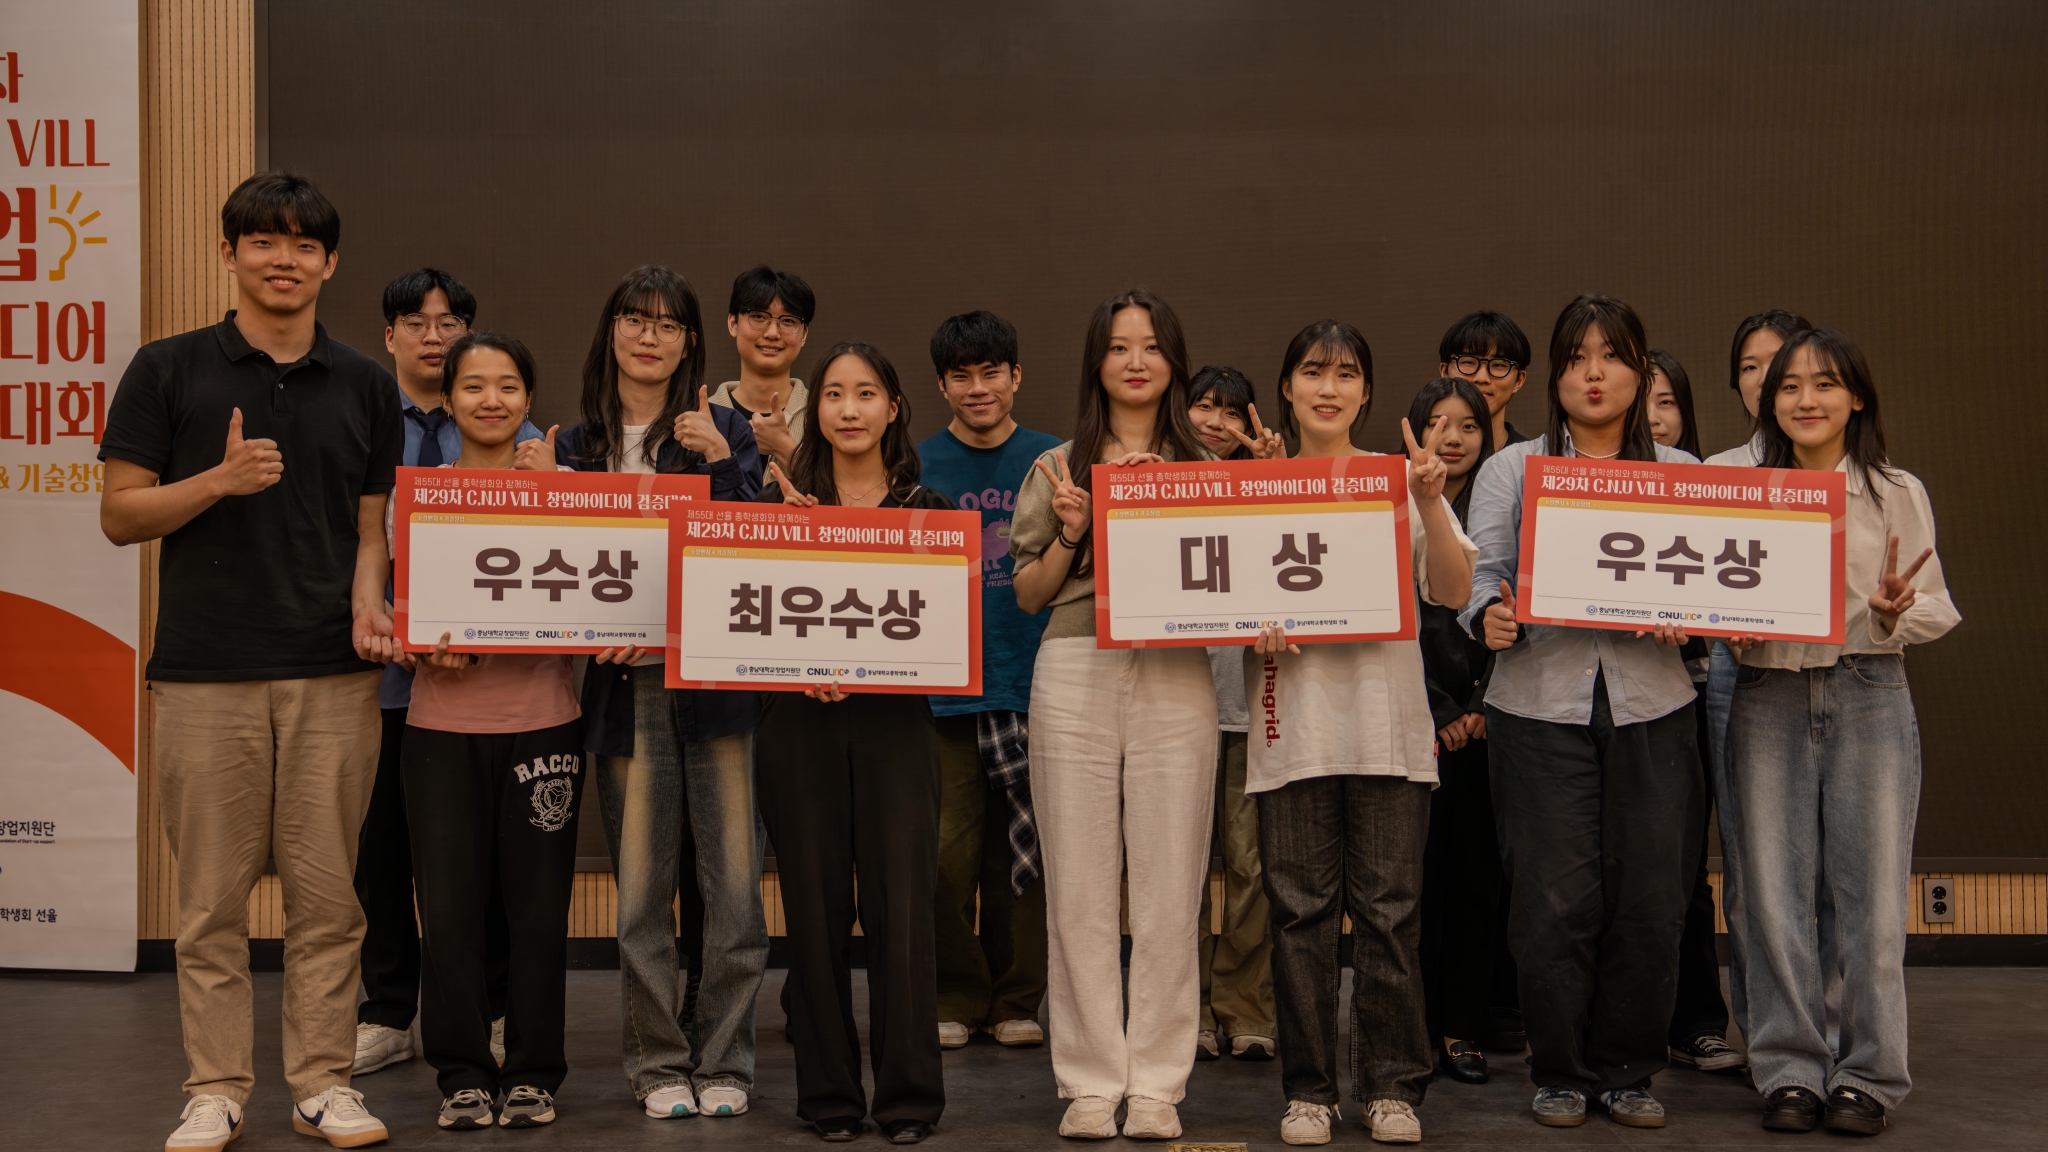 창업지원단-총학생회, ‘제29차 C.N.U VILL 창업아이디어 검증대회’ 개최 사진1